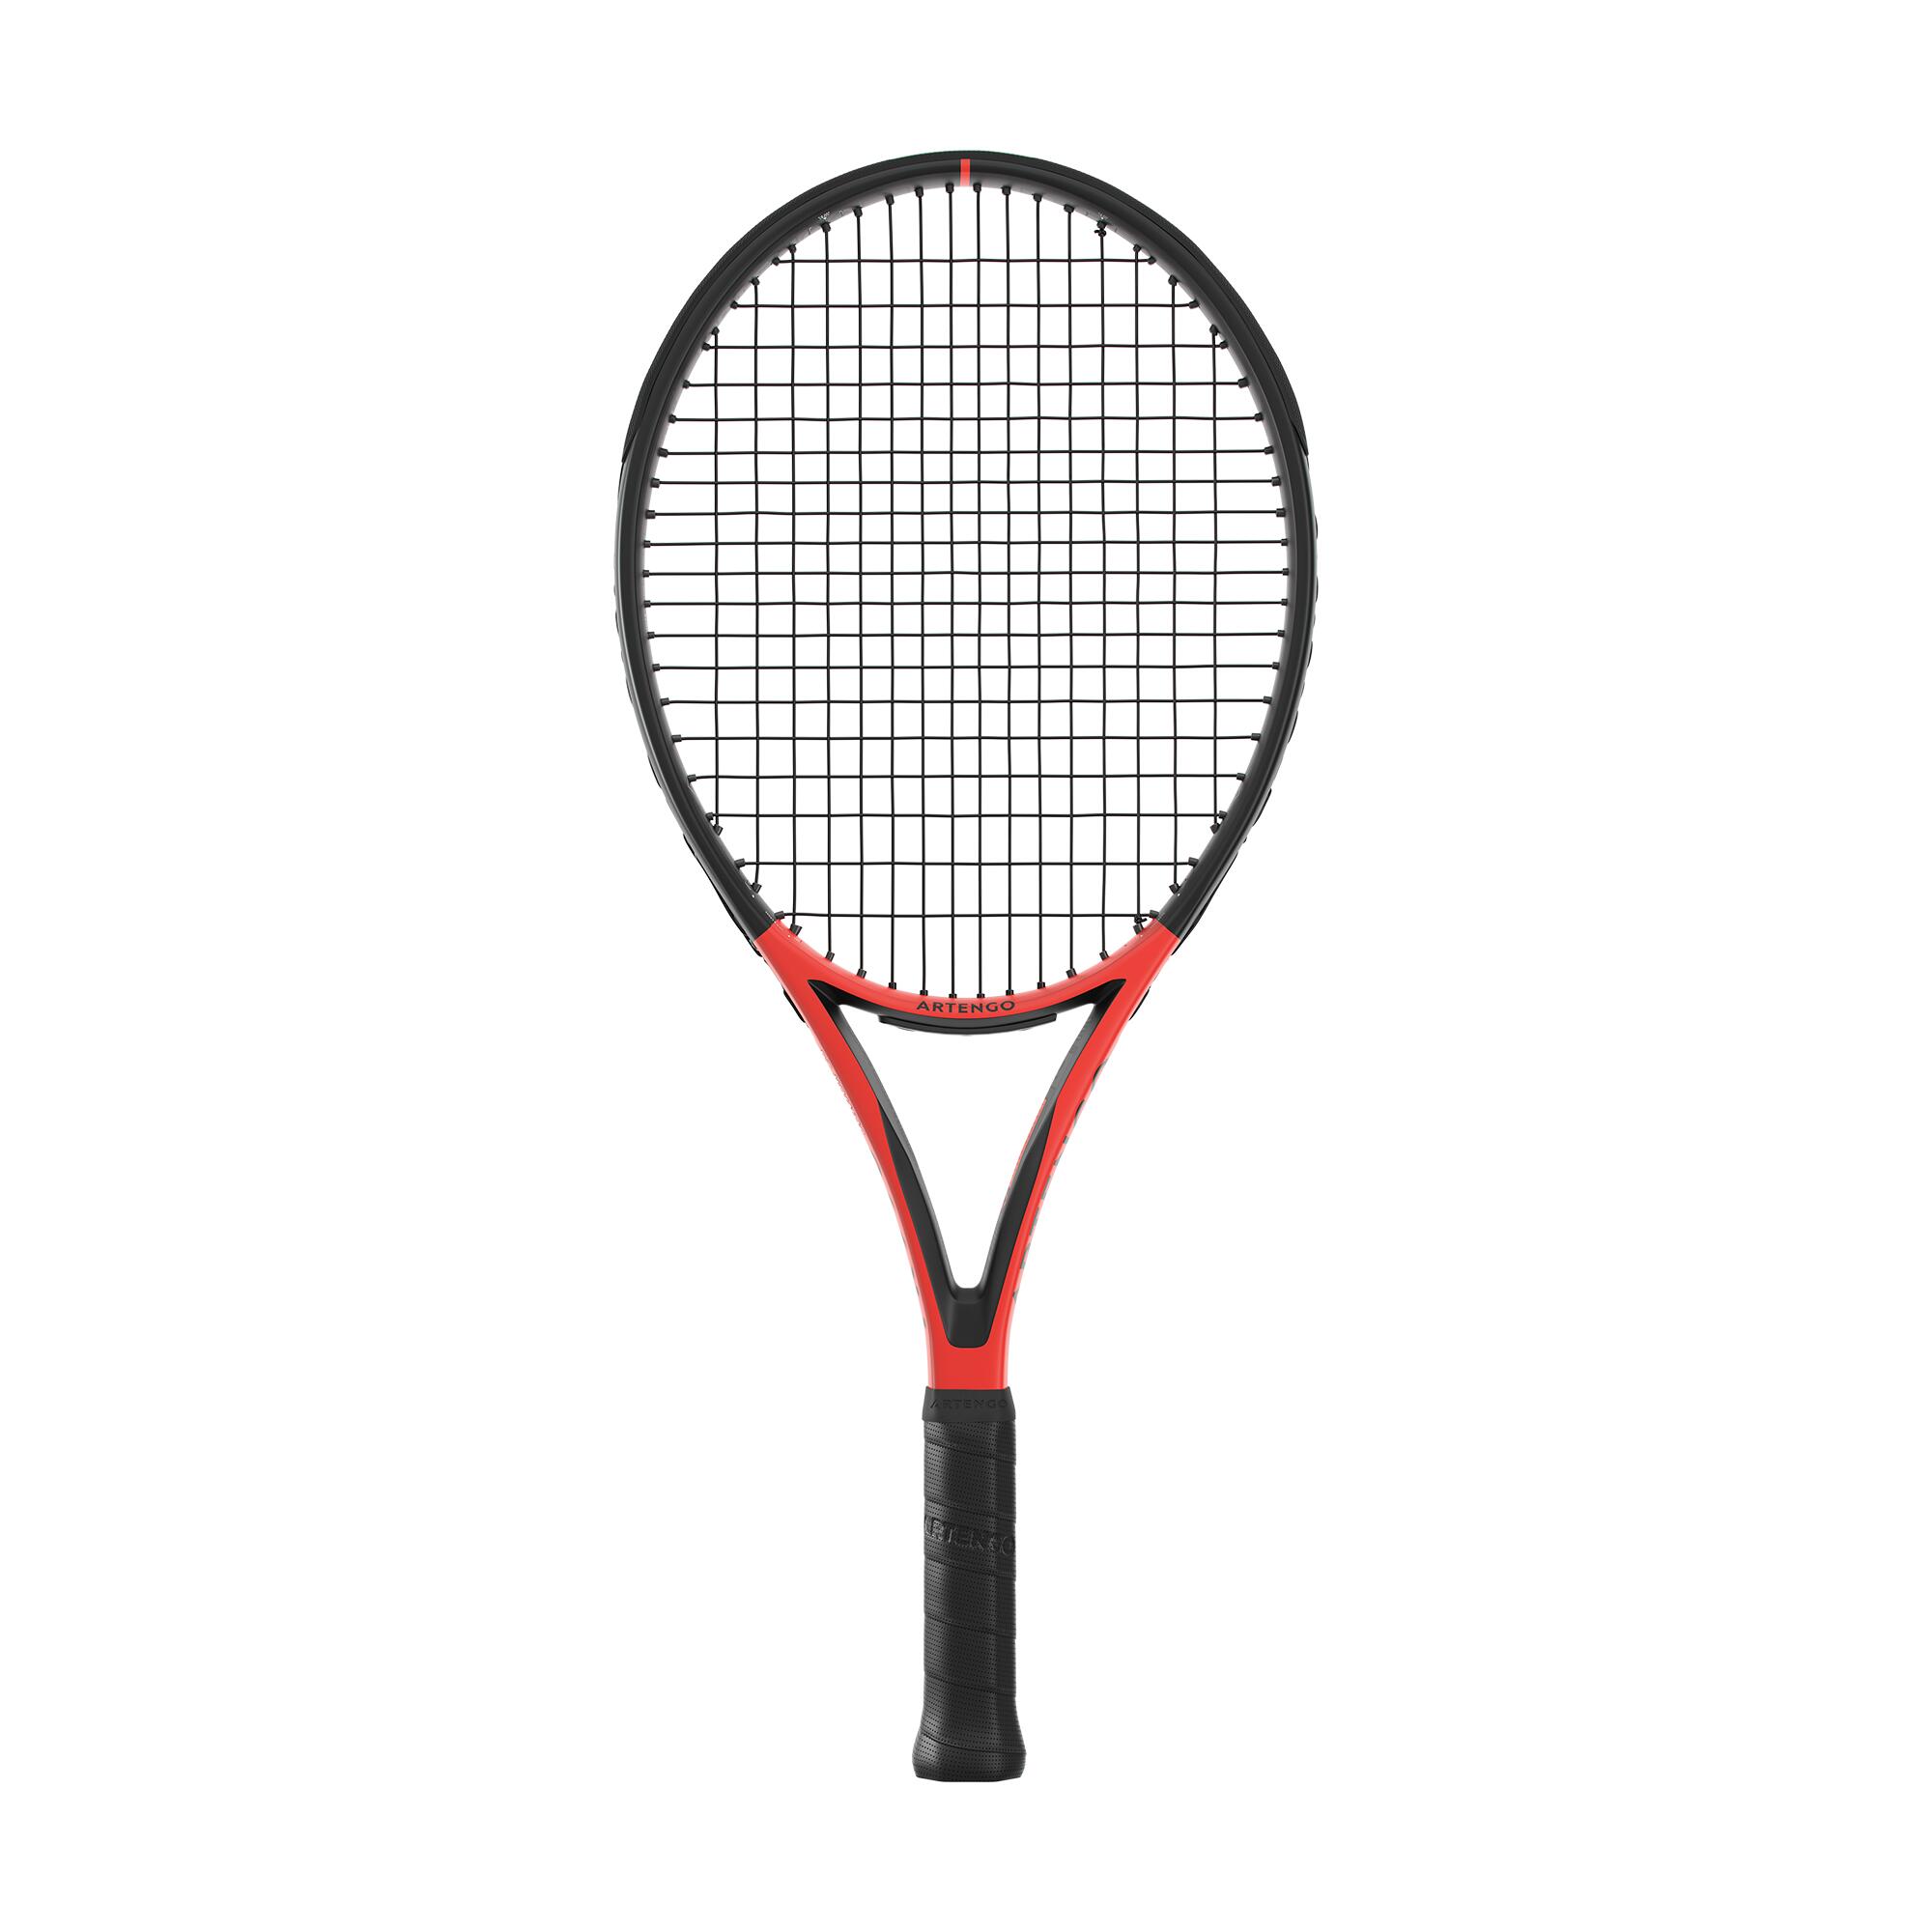 Tennis school equipment